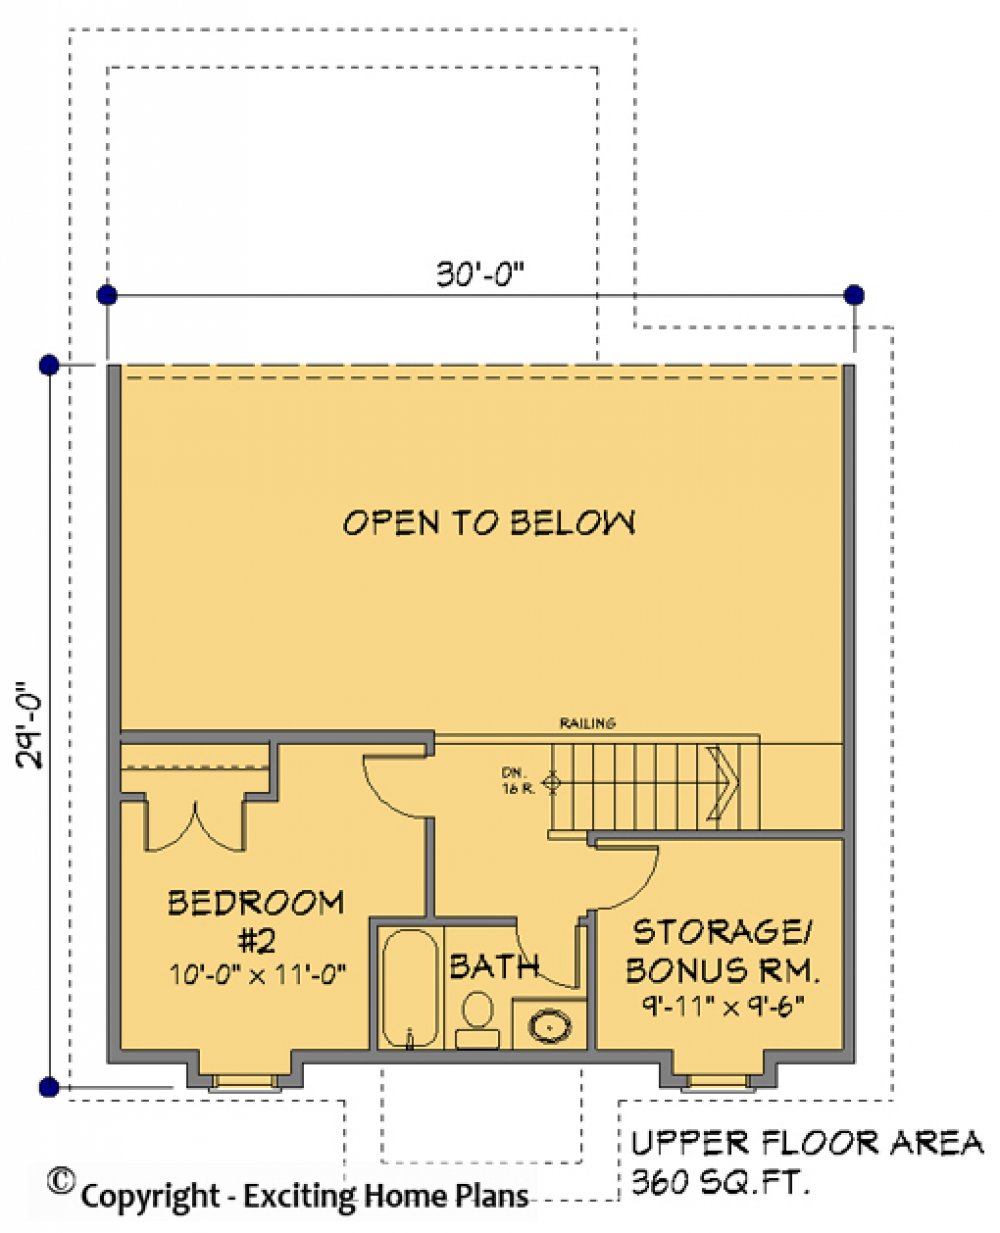 House Plan E1113-10 Upper Floor Plan